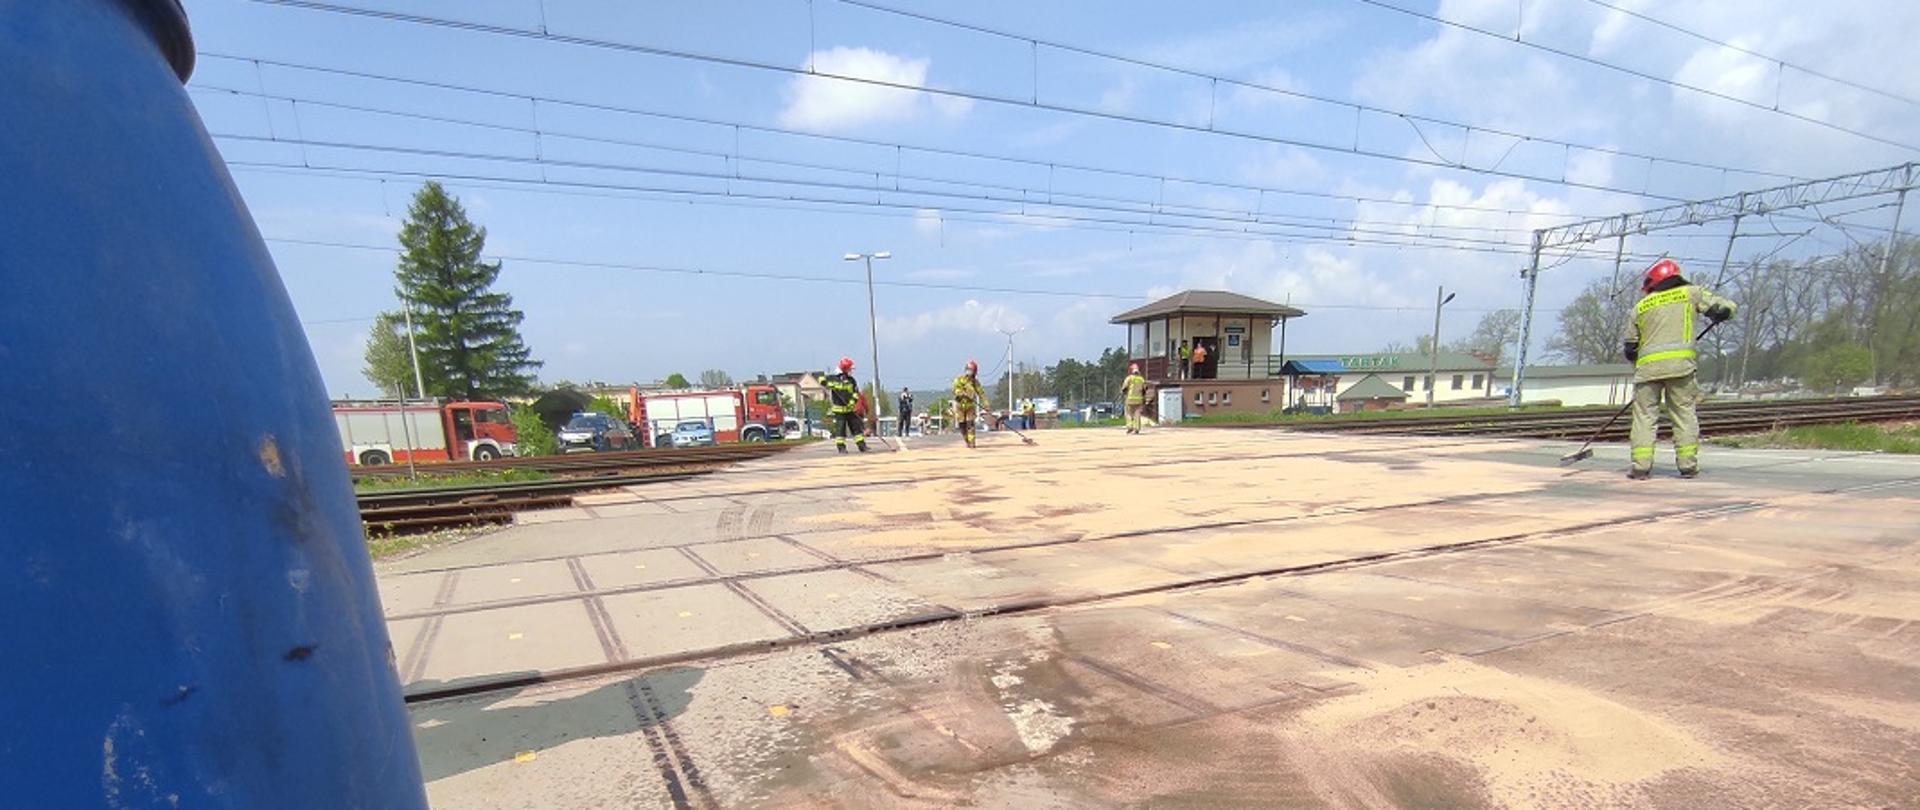 Na zdjęciu widzimy jak strażacy za pomocą sorbentu Compact usuwają rozlany olej hydrauliczny na przejeździe kolejowym zlokalizowanym w miejscowości Suchedniów na ul. Bugaj. Na czas prowadzenia działań przez strażaków ruch kolejowy w miejscu akcji został całkowicie zatrzymany.